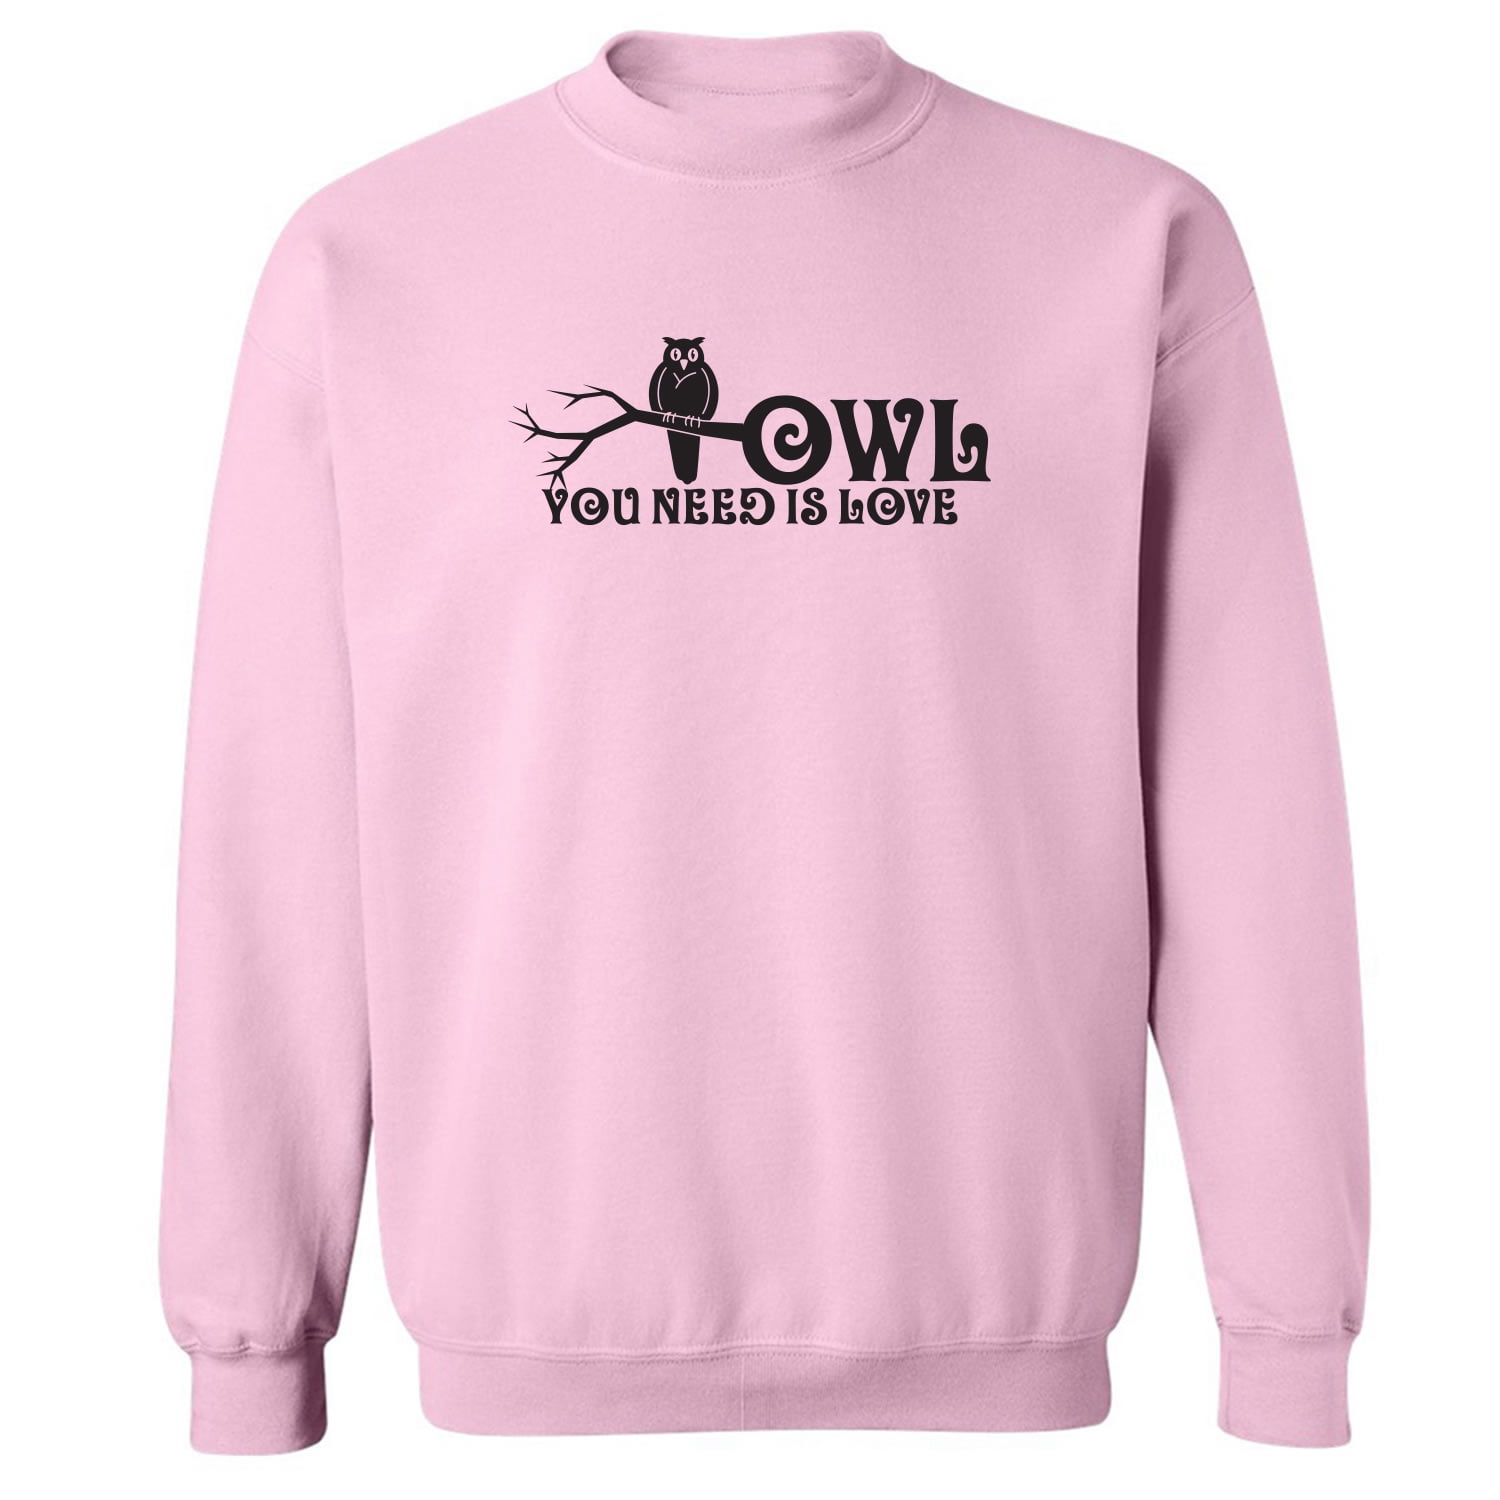 Owl You Need is Love Crewneck Sweatshirt 